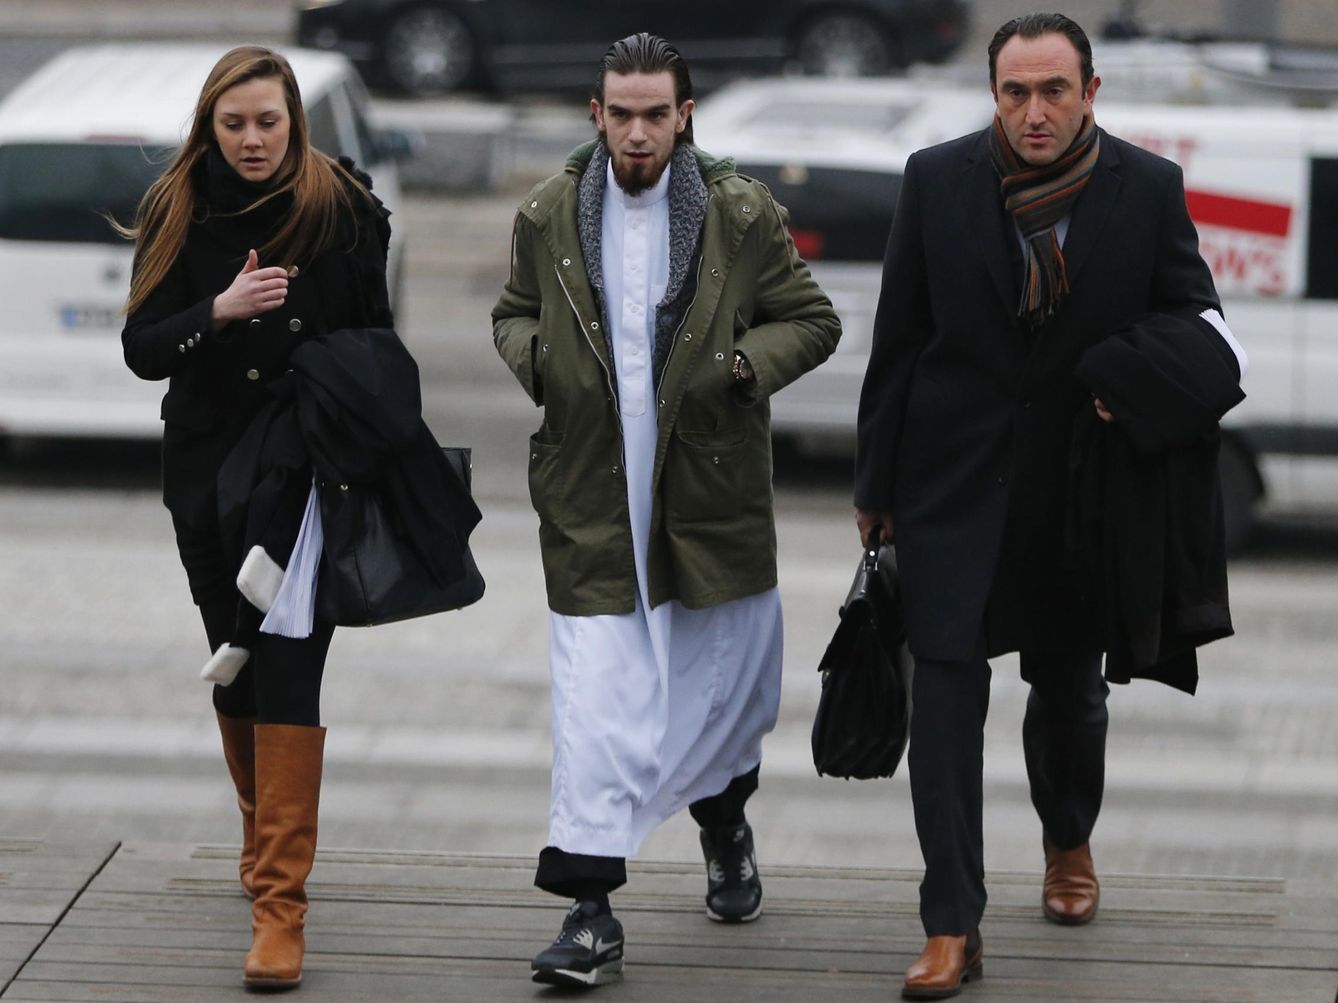 Michael Delefortrie, presunto miembro de 'Sharia4Belgium', camino al juicio contra esta organización islamista en Antwerp, en febrero de 2015.